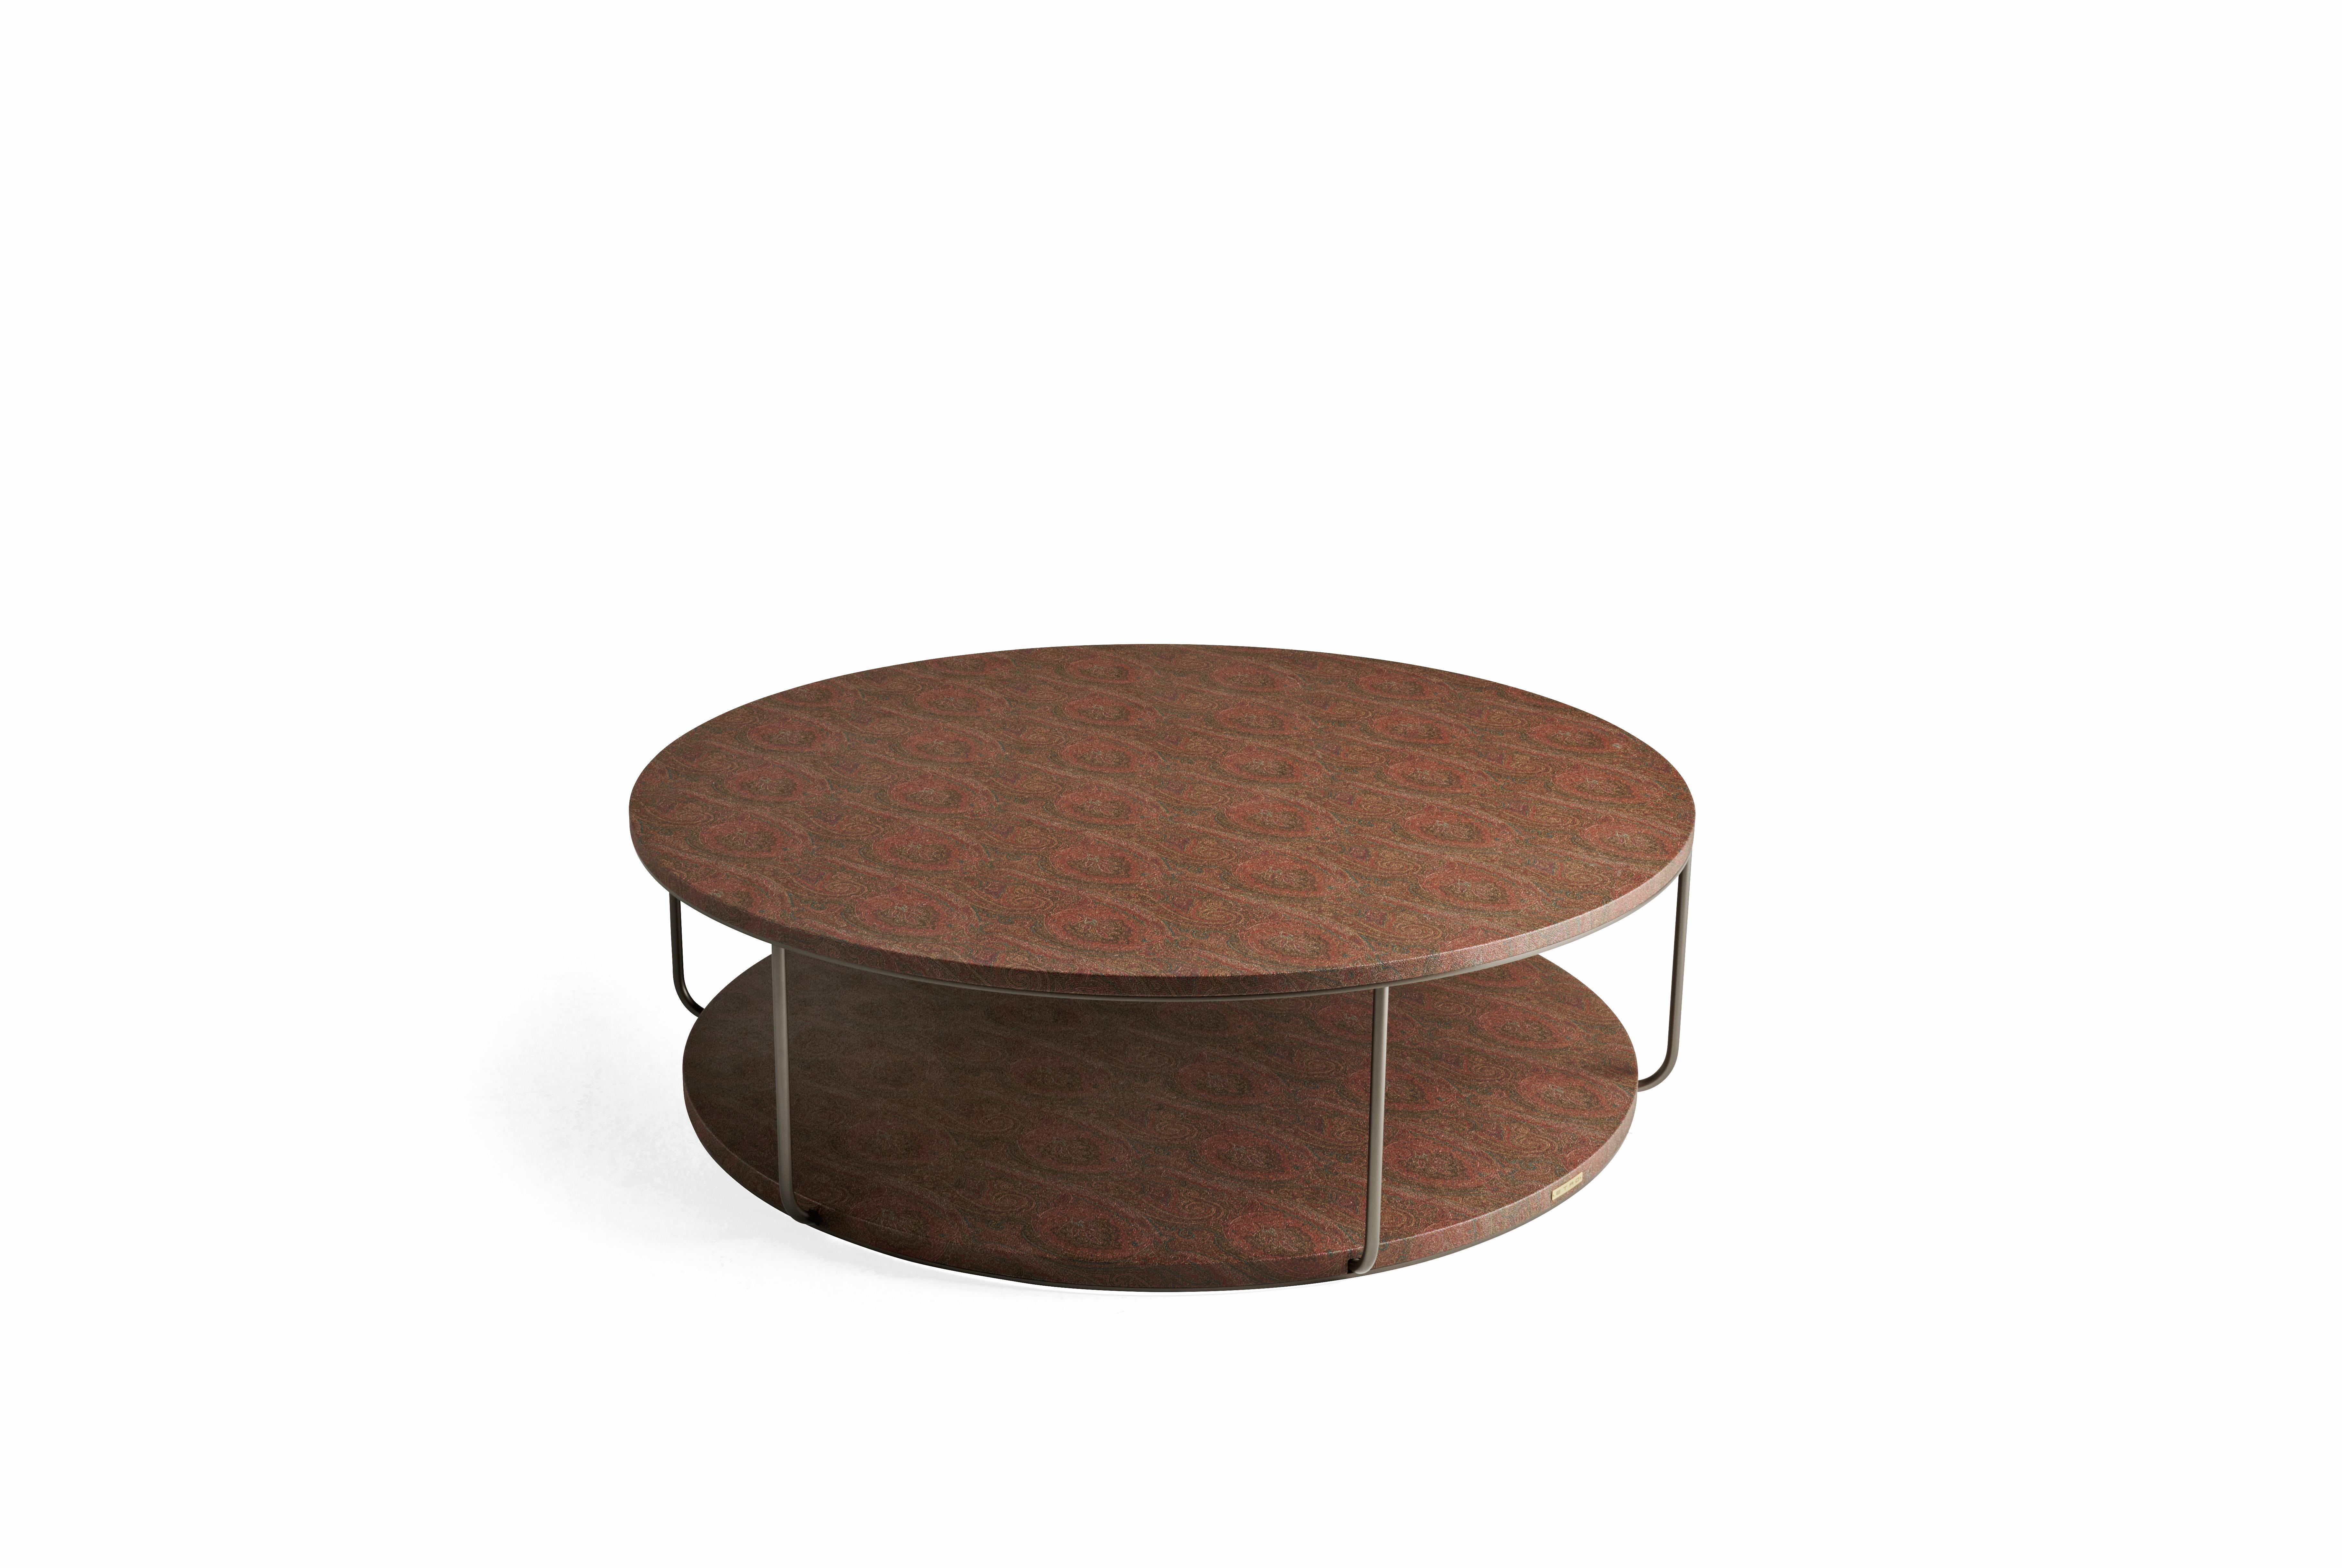 Double ist eine Serie von niedrigen Tischen mit einer minimalistischen Ästhetik. Sie zeichnen sich durch dünne Metallbeine mit bronziertem Finish aus, die dem Möbelstück eine leichte und elegante Ausstrahlung verleihen, und verfügen über zwei